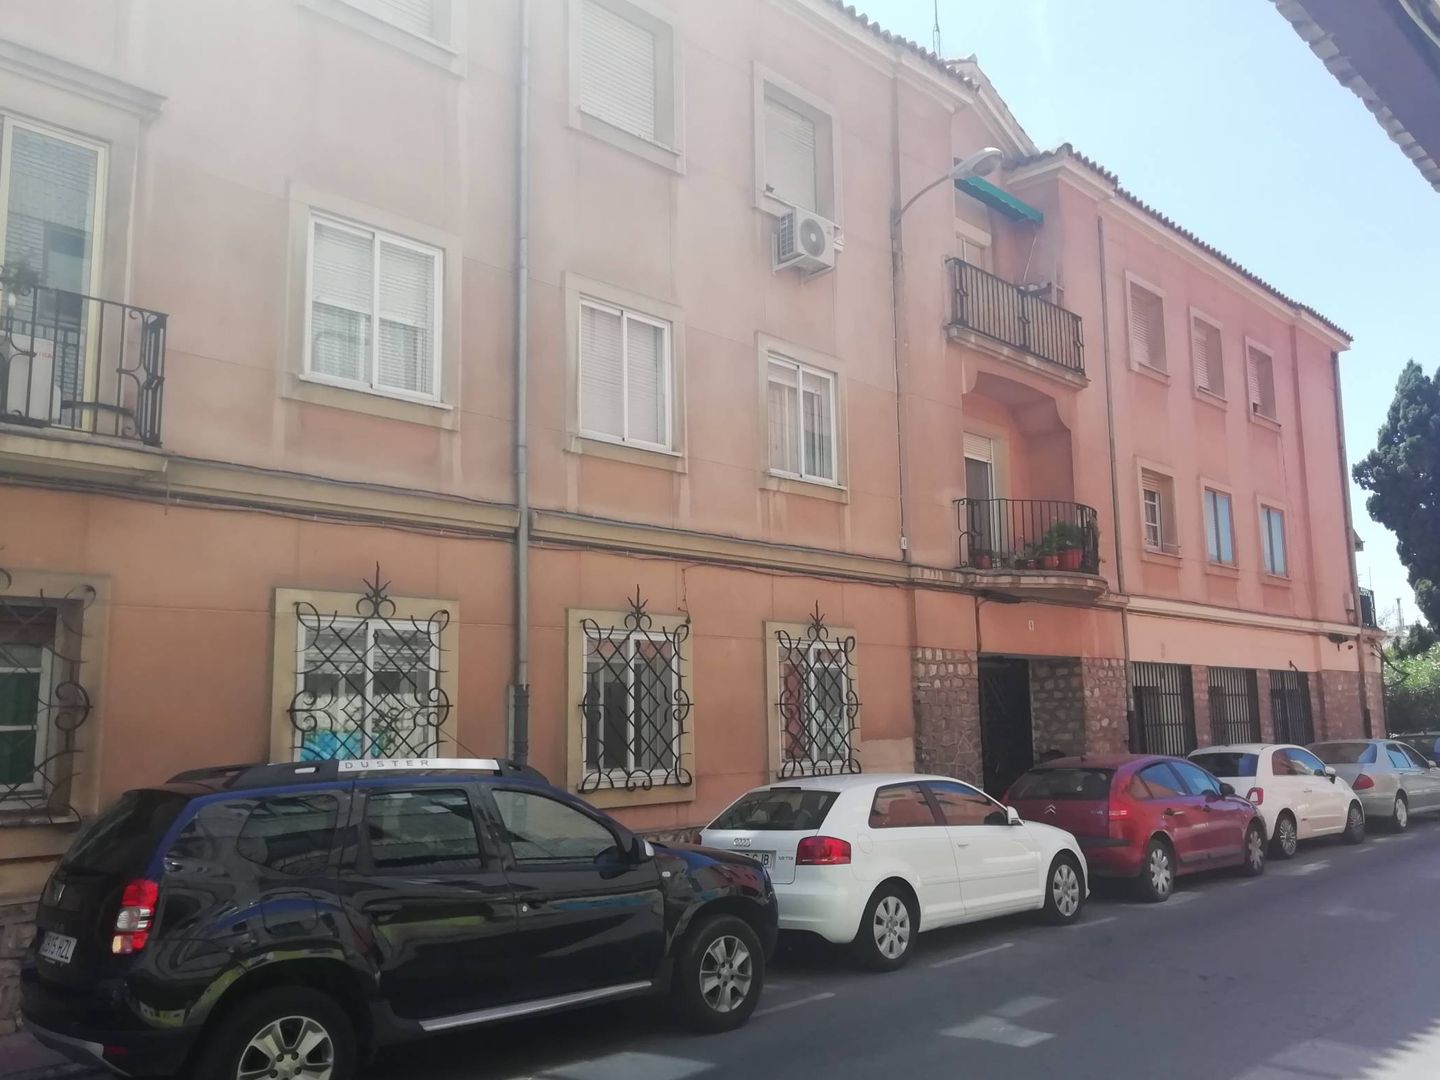 Algunos de los pisos municipales de la calle Eras de San Isidro.